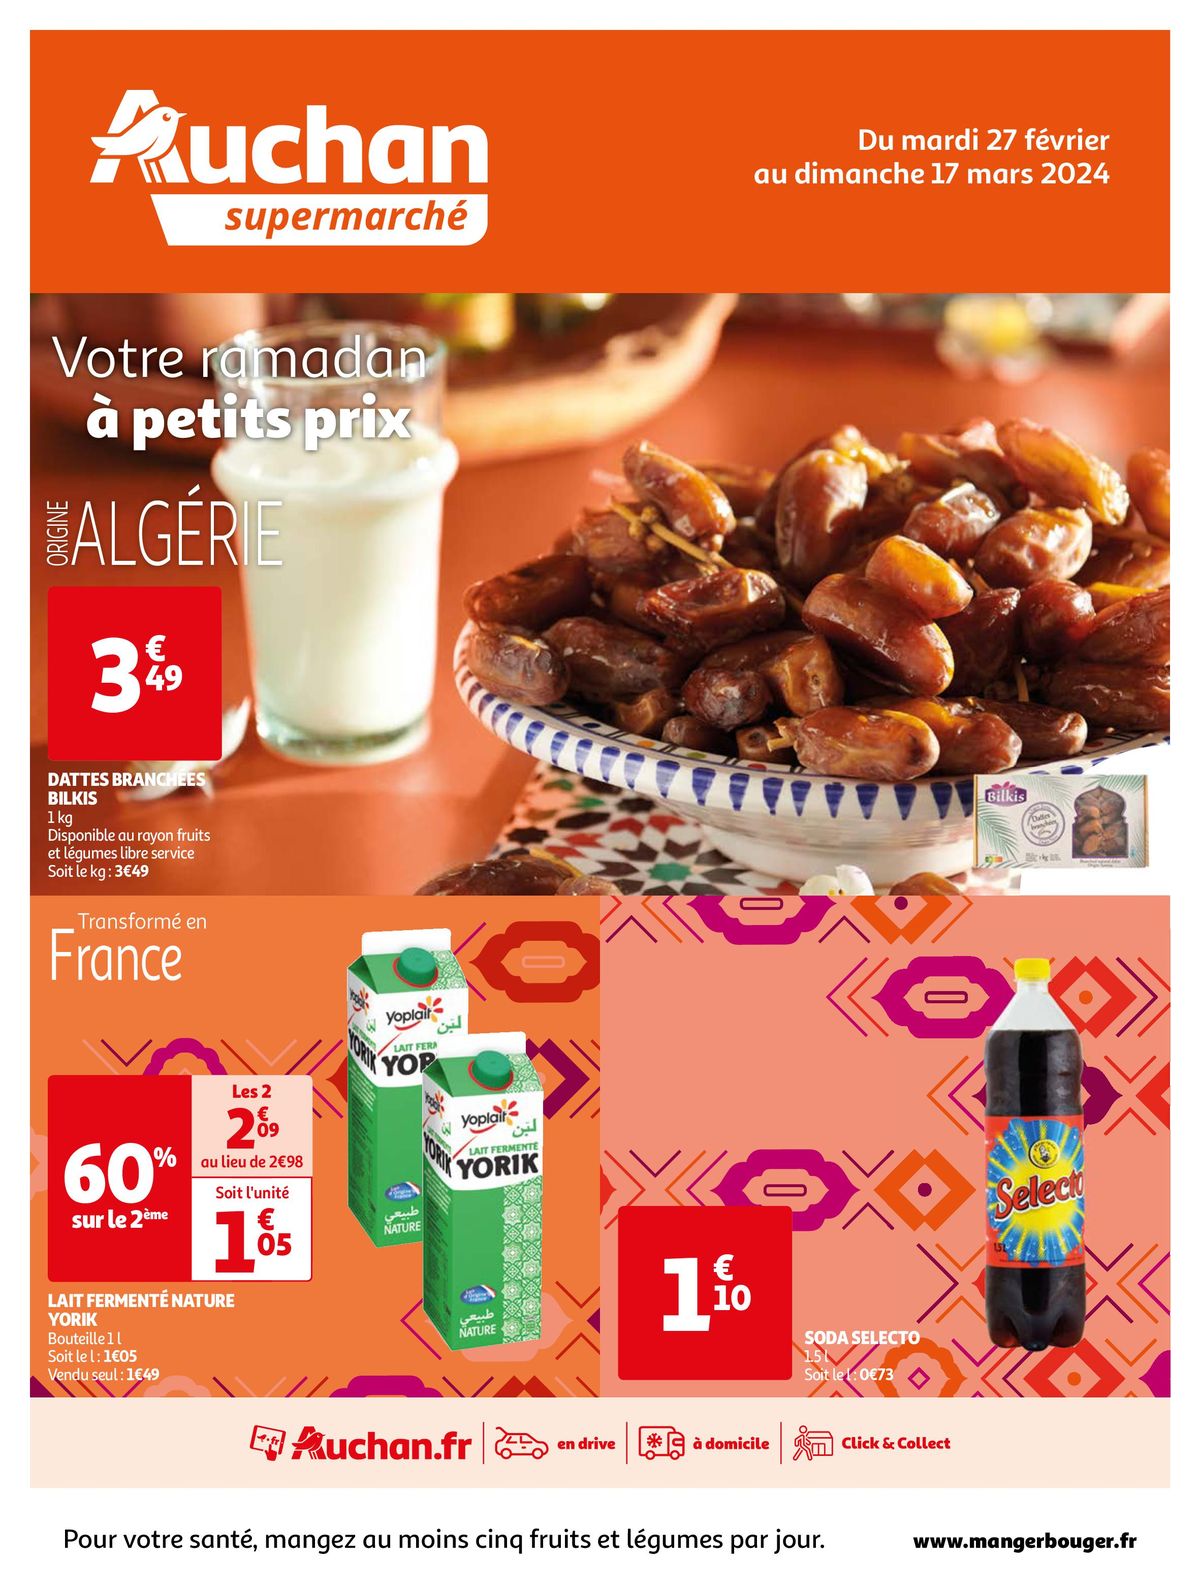 Catalogue Votre ramadan à petits prix dans votre super, page 00001